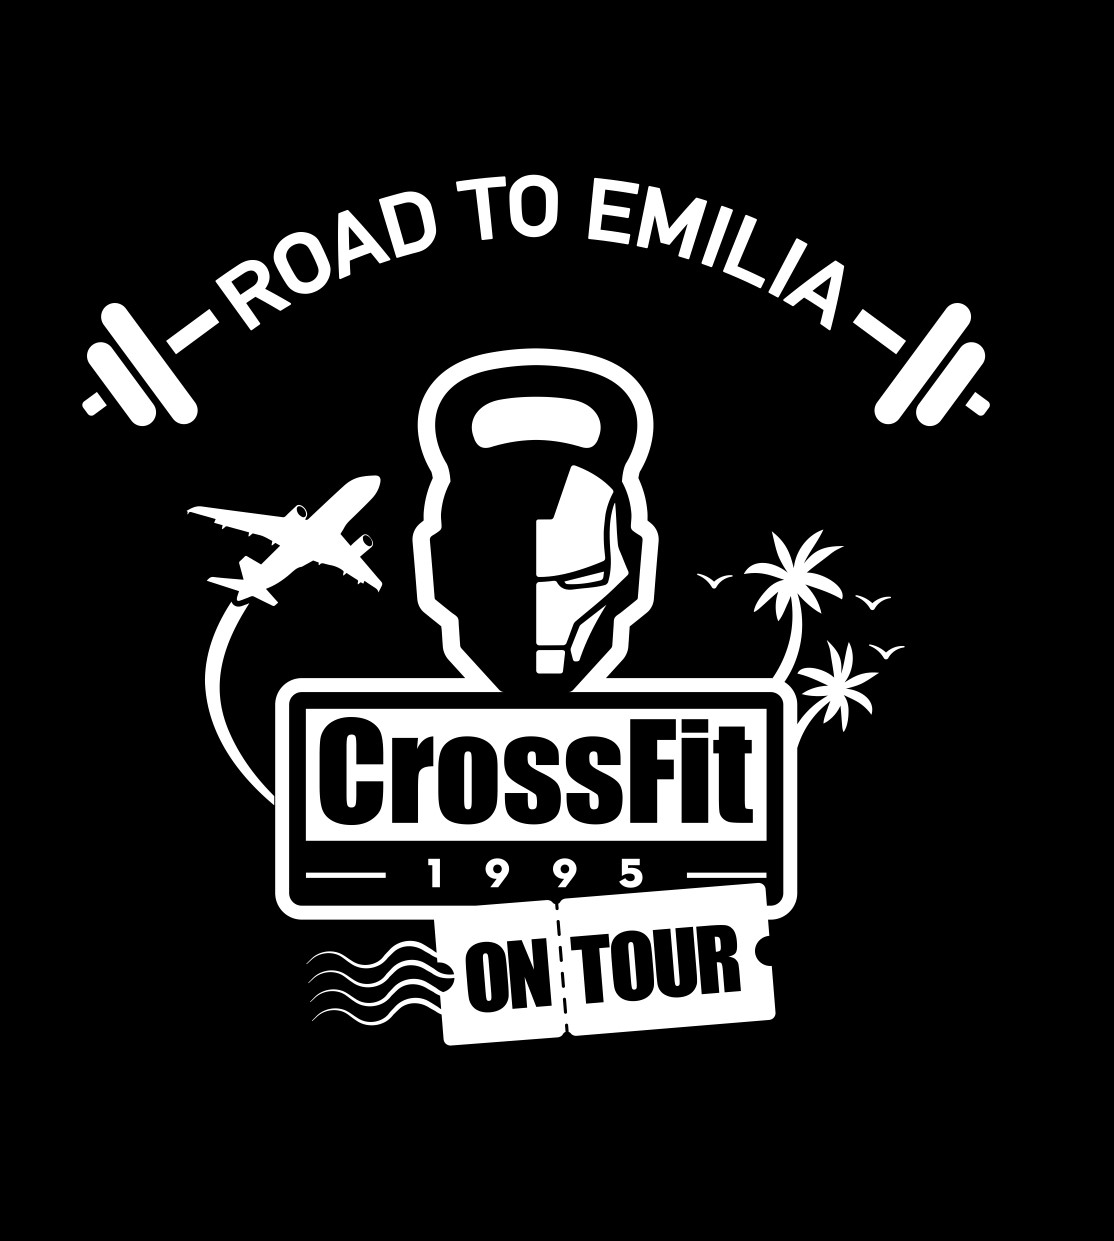 LogoCrossFit1995-OnTour-Official-Emilia-2_page-prova